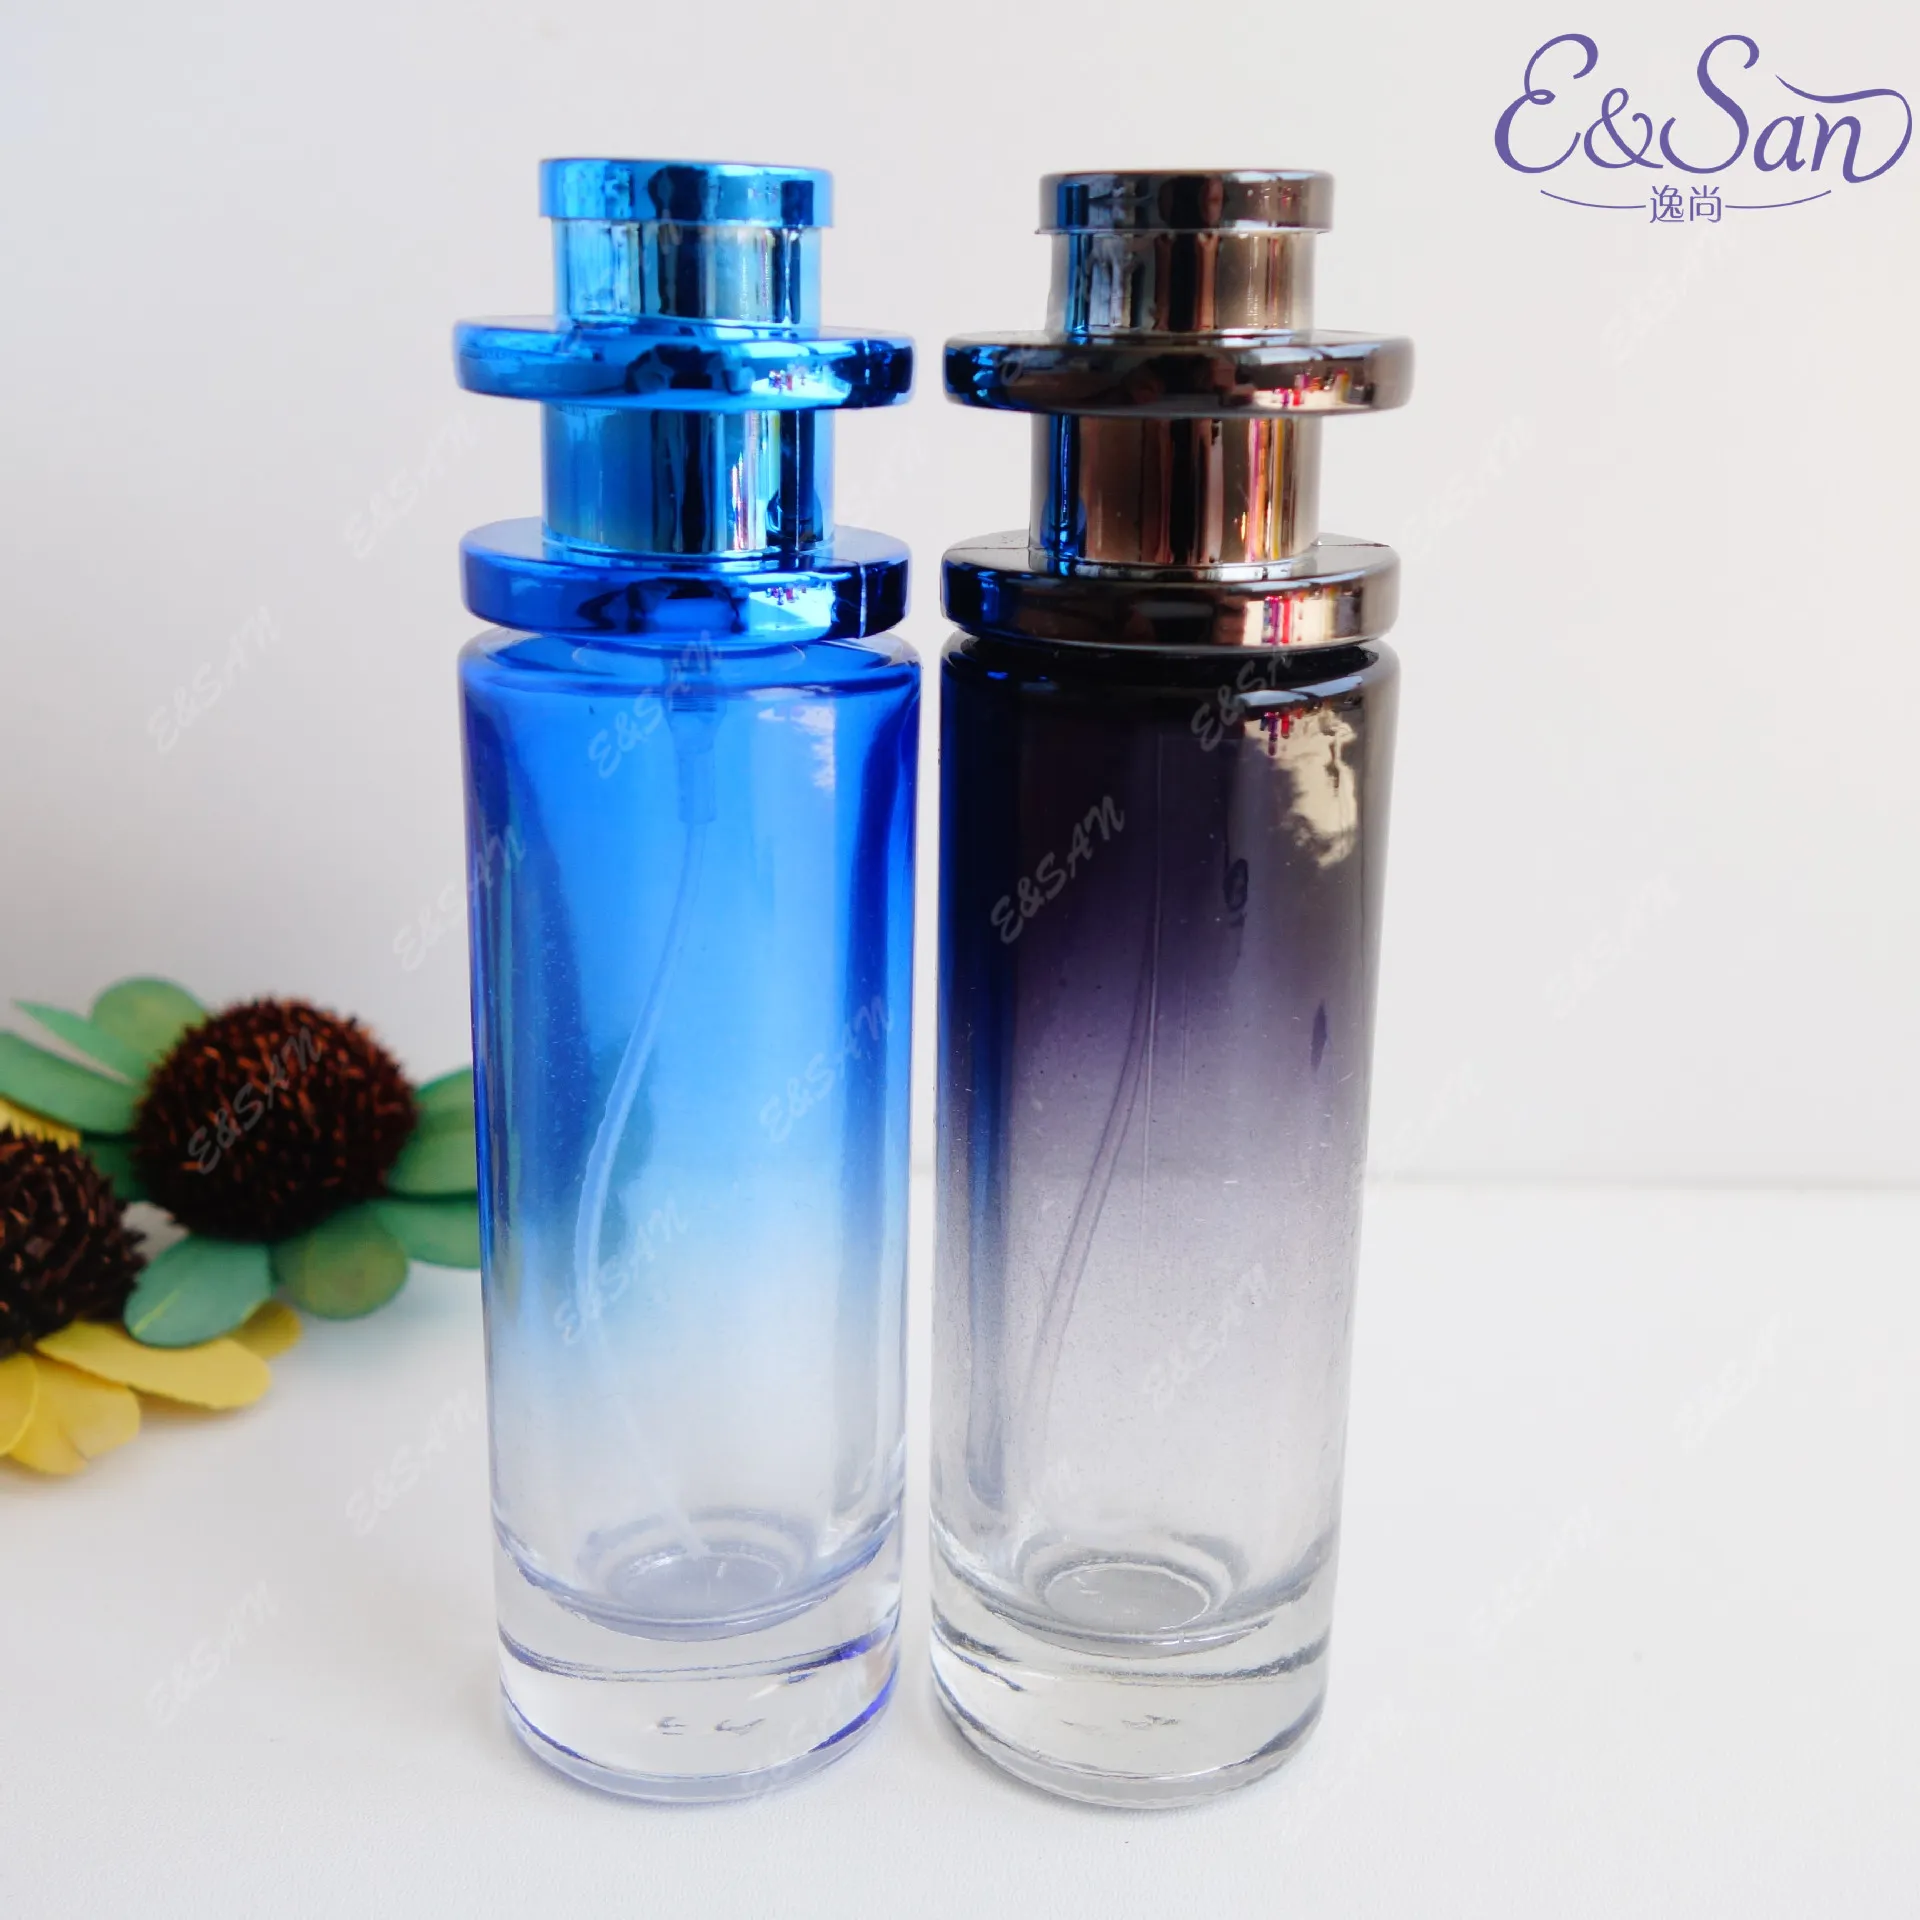 100 adet 30 ml Doldurulabilir Parfüm Sprey Şişesi Boş Cam Şişe Seyahat Parfüm Atomizer PT022A-30 ML ile